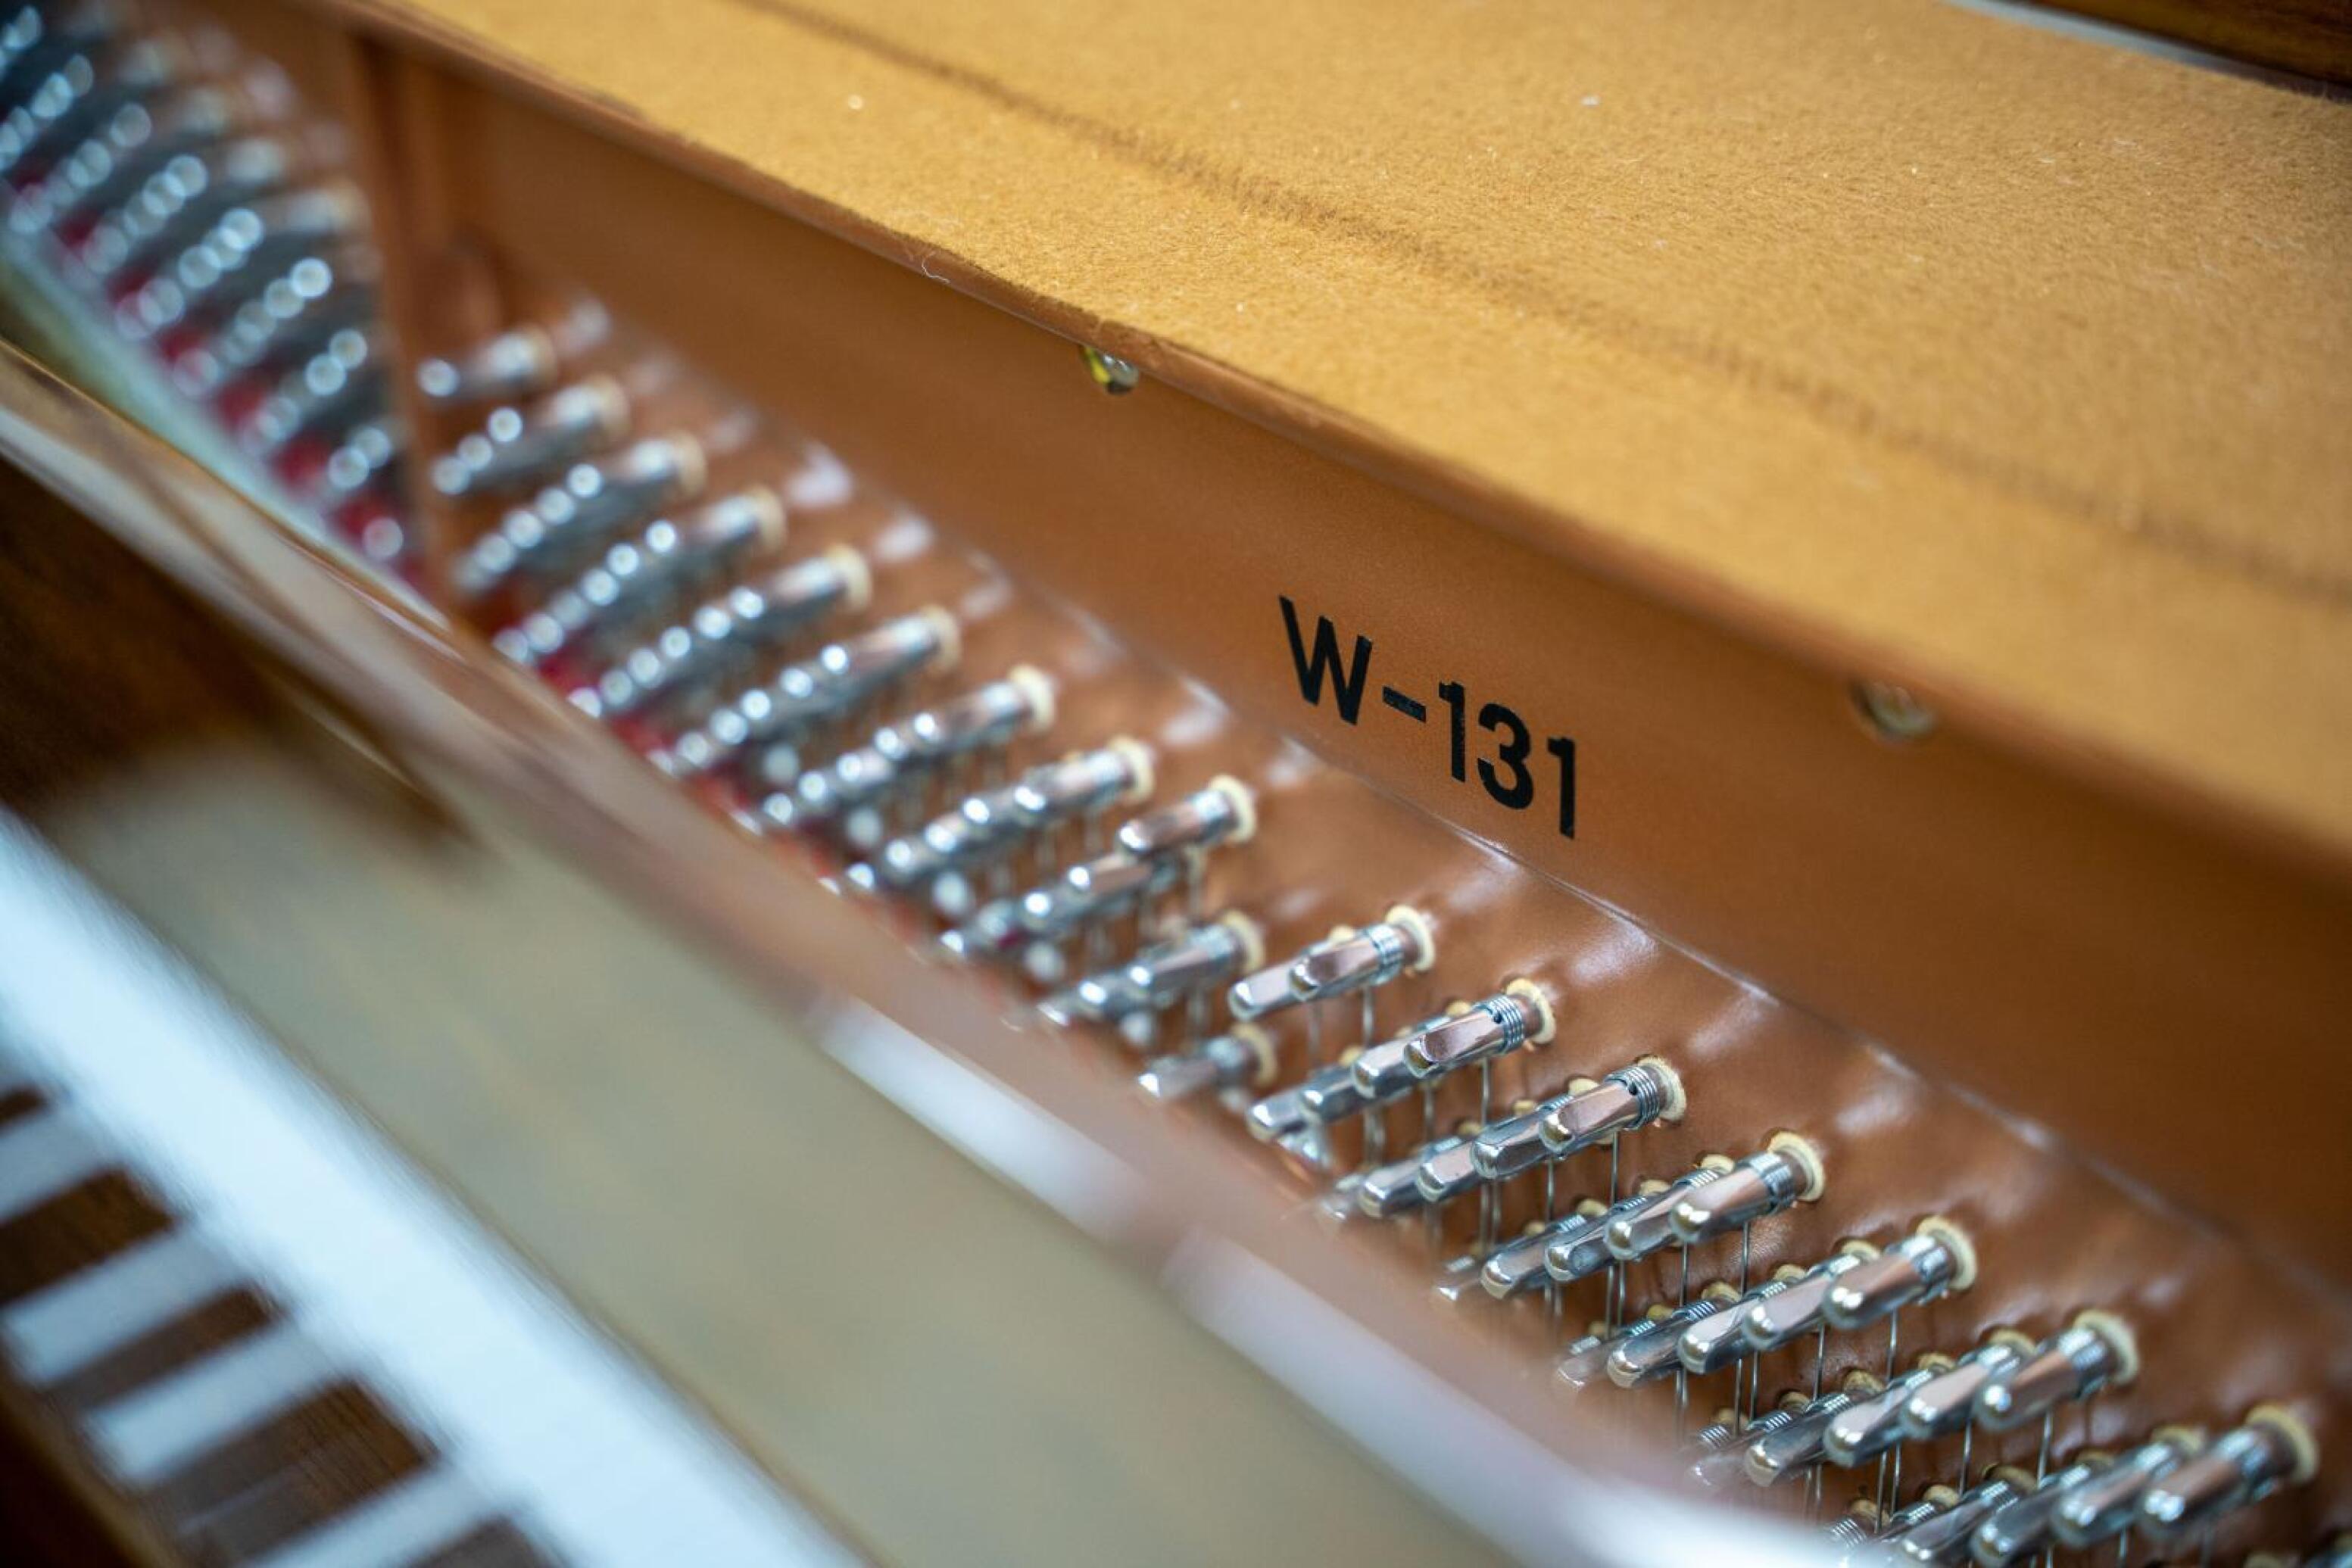  پیانو آکوستیک دیواری وبر Weber W-131 